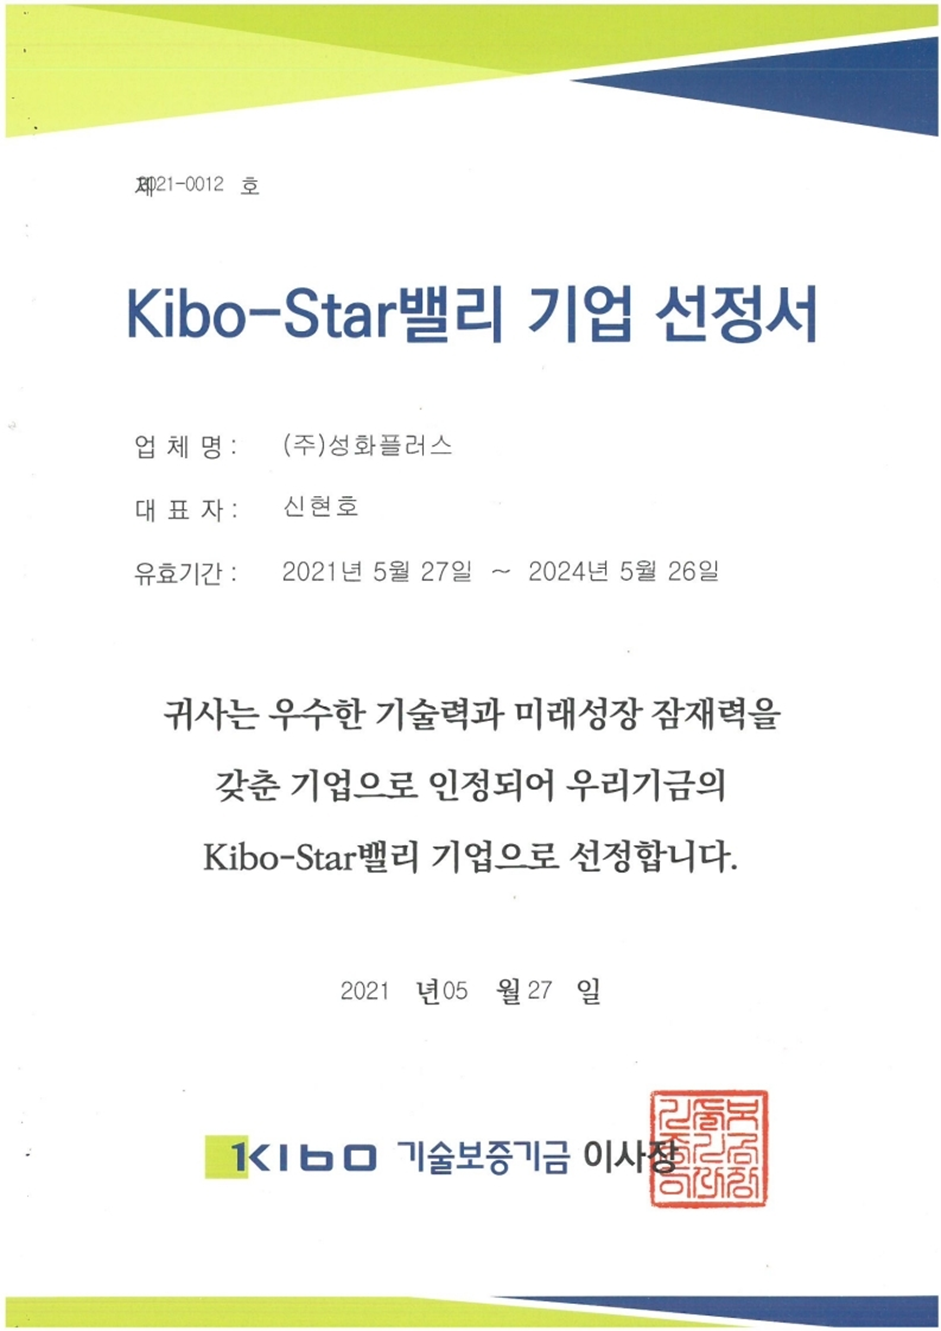 Kibo-Star밸리 기업 선정서  Kibo-Star Valley Company Selection Letter